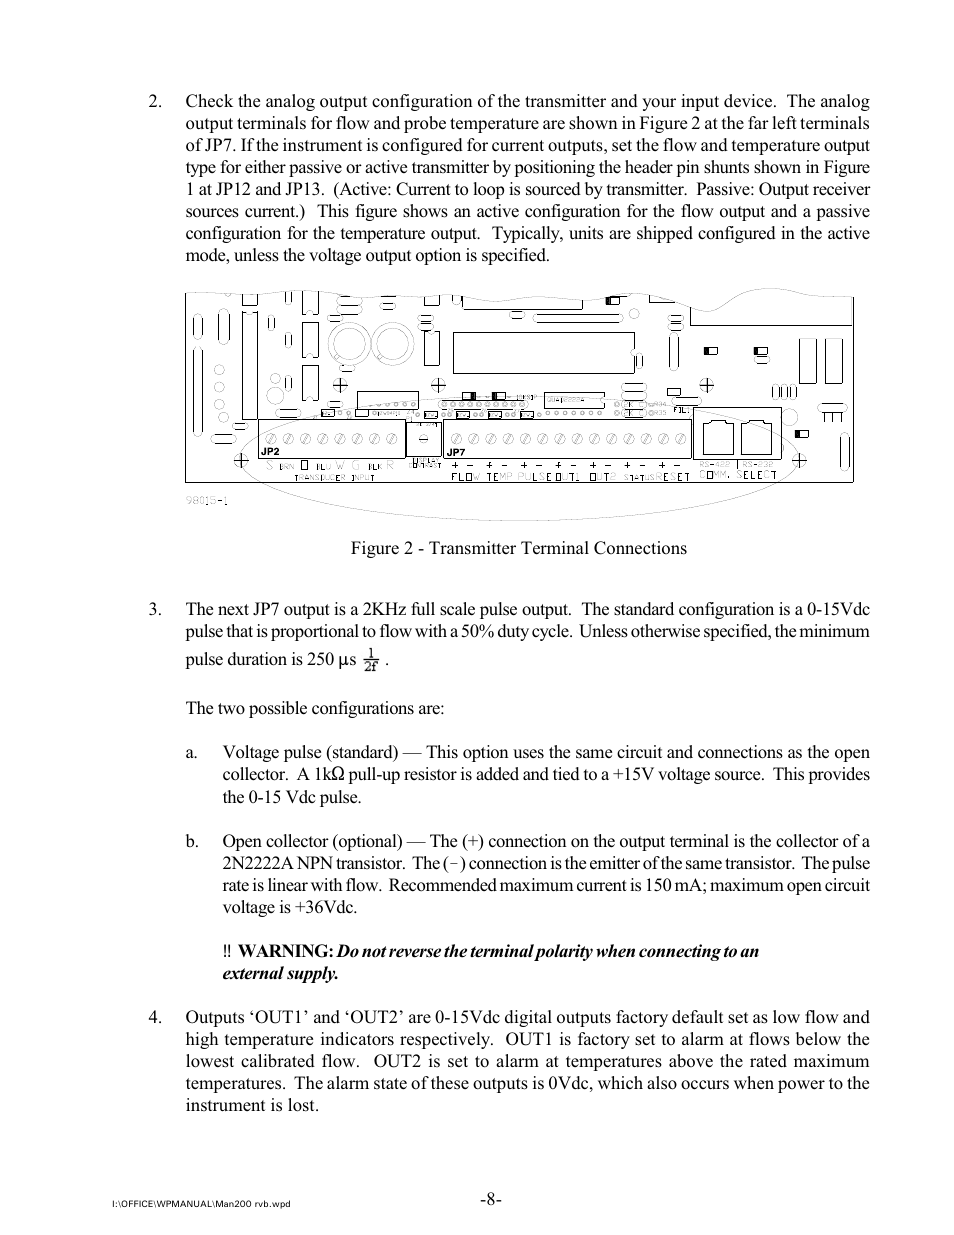 Intek 200 User Manual | Page 10 / 27